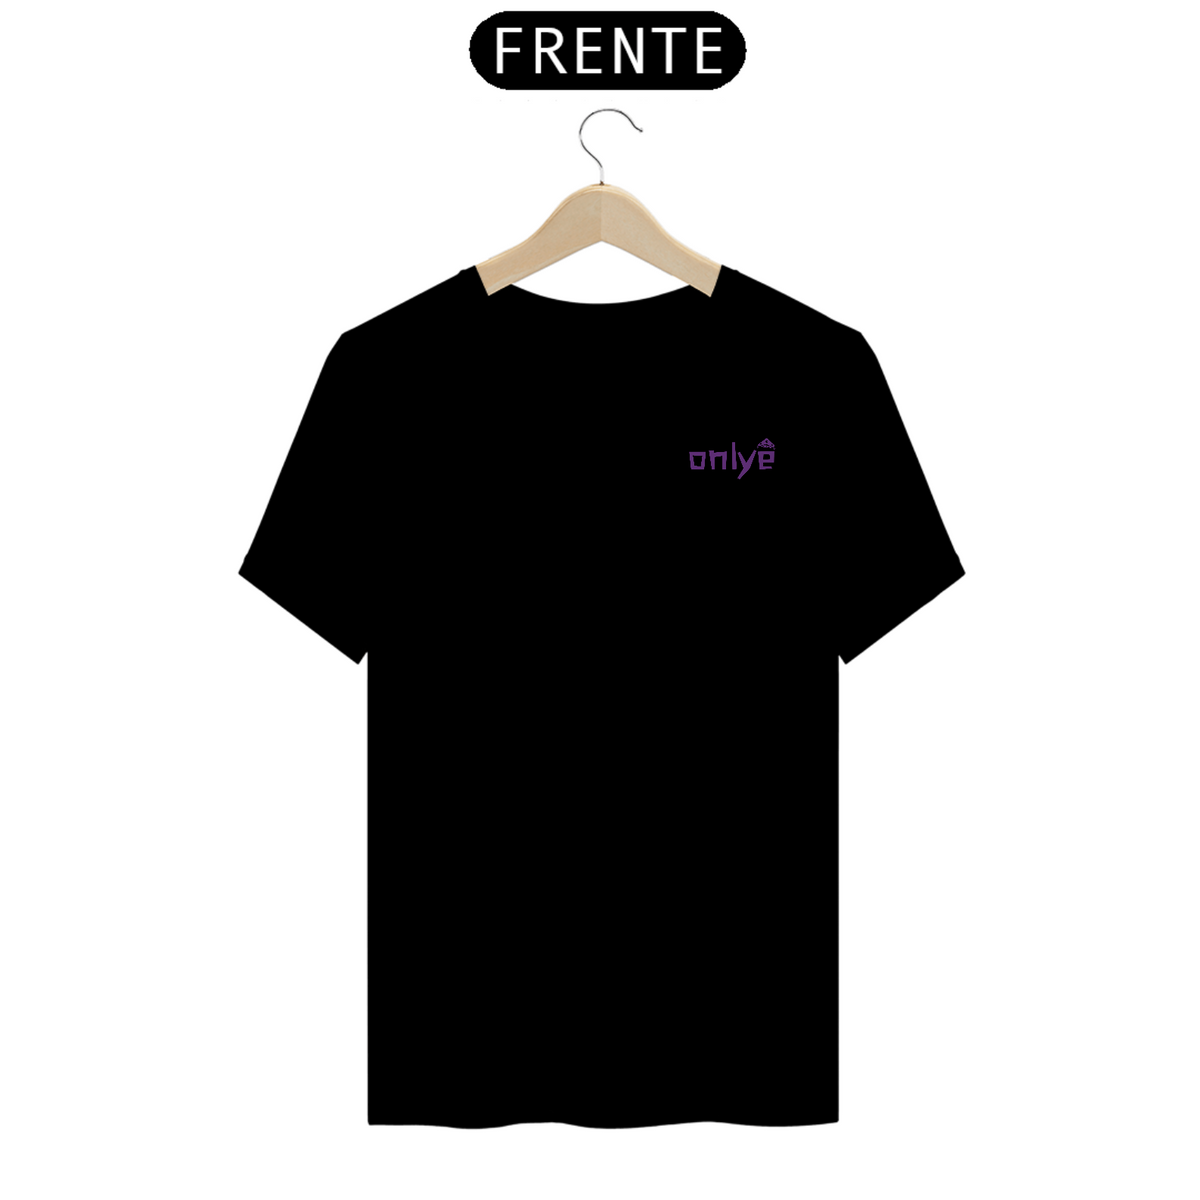 Nome do produto: Camiseta Onlye Nordeste